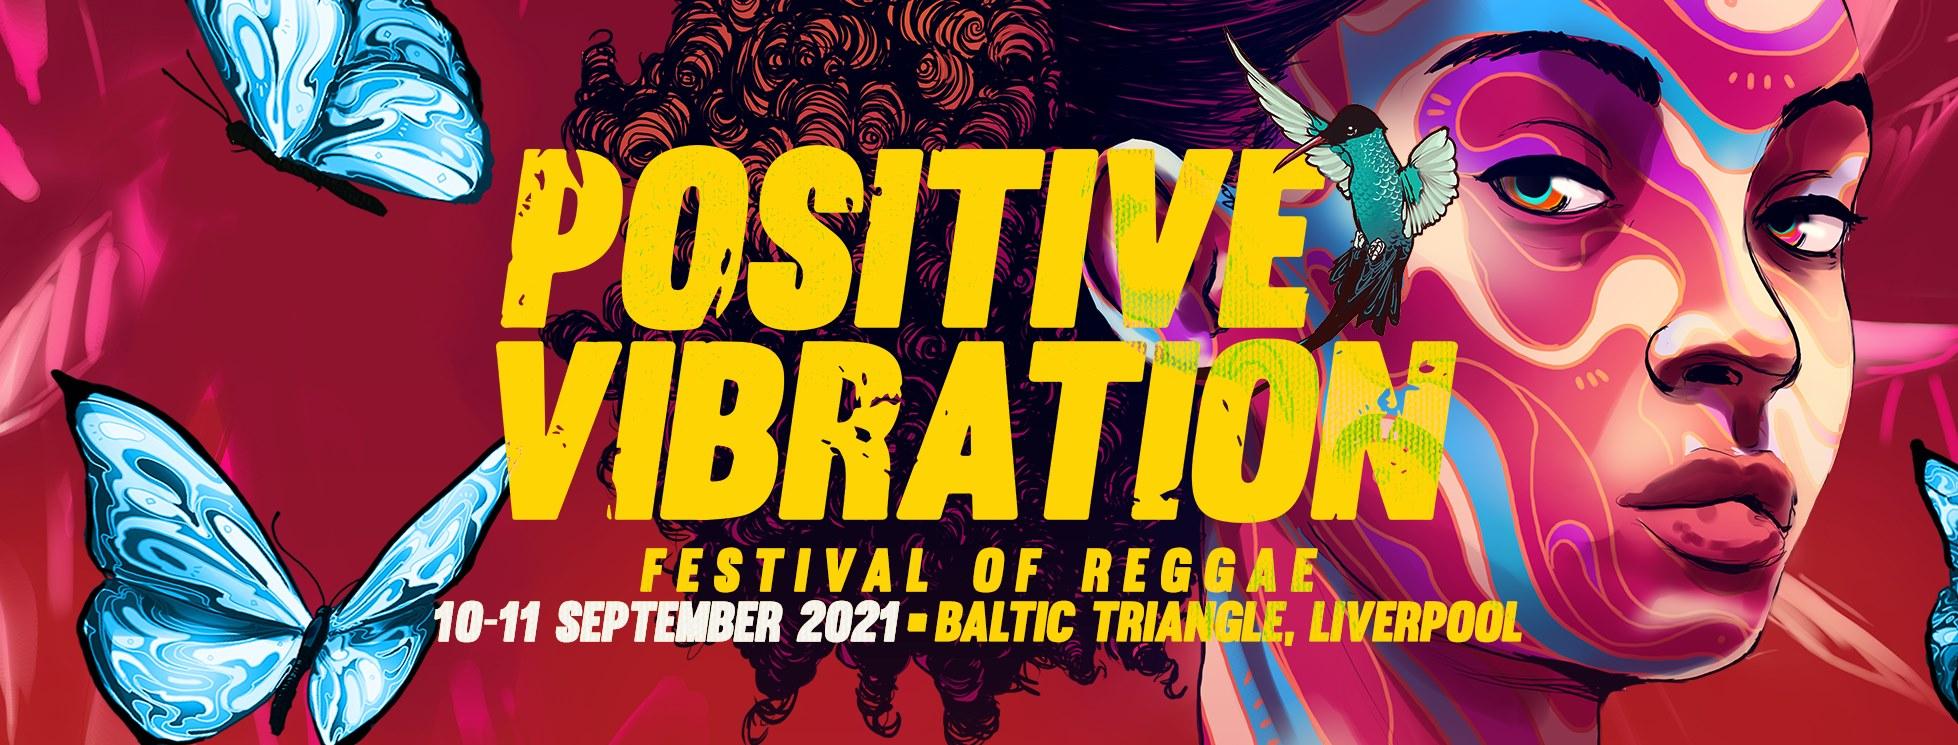 Award winning reggae festival returns